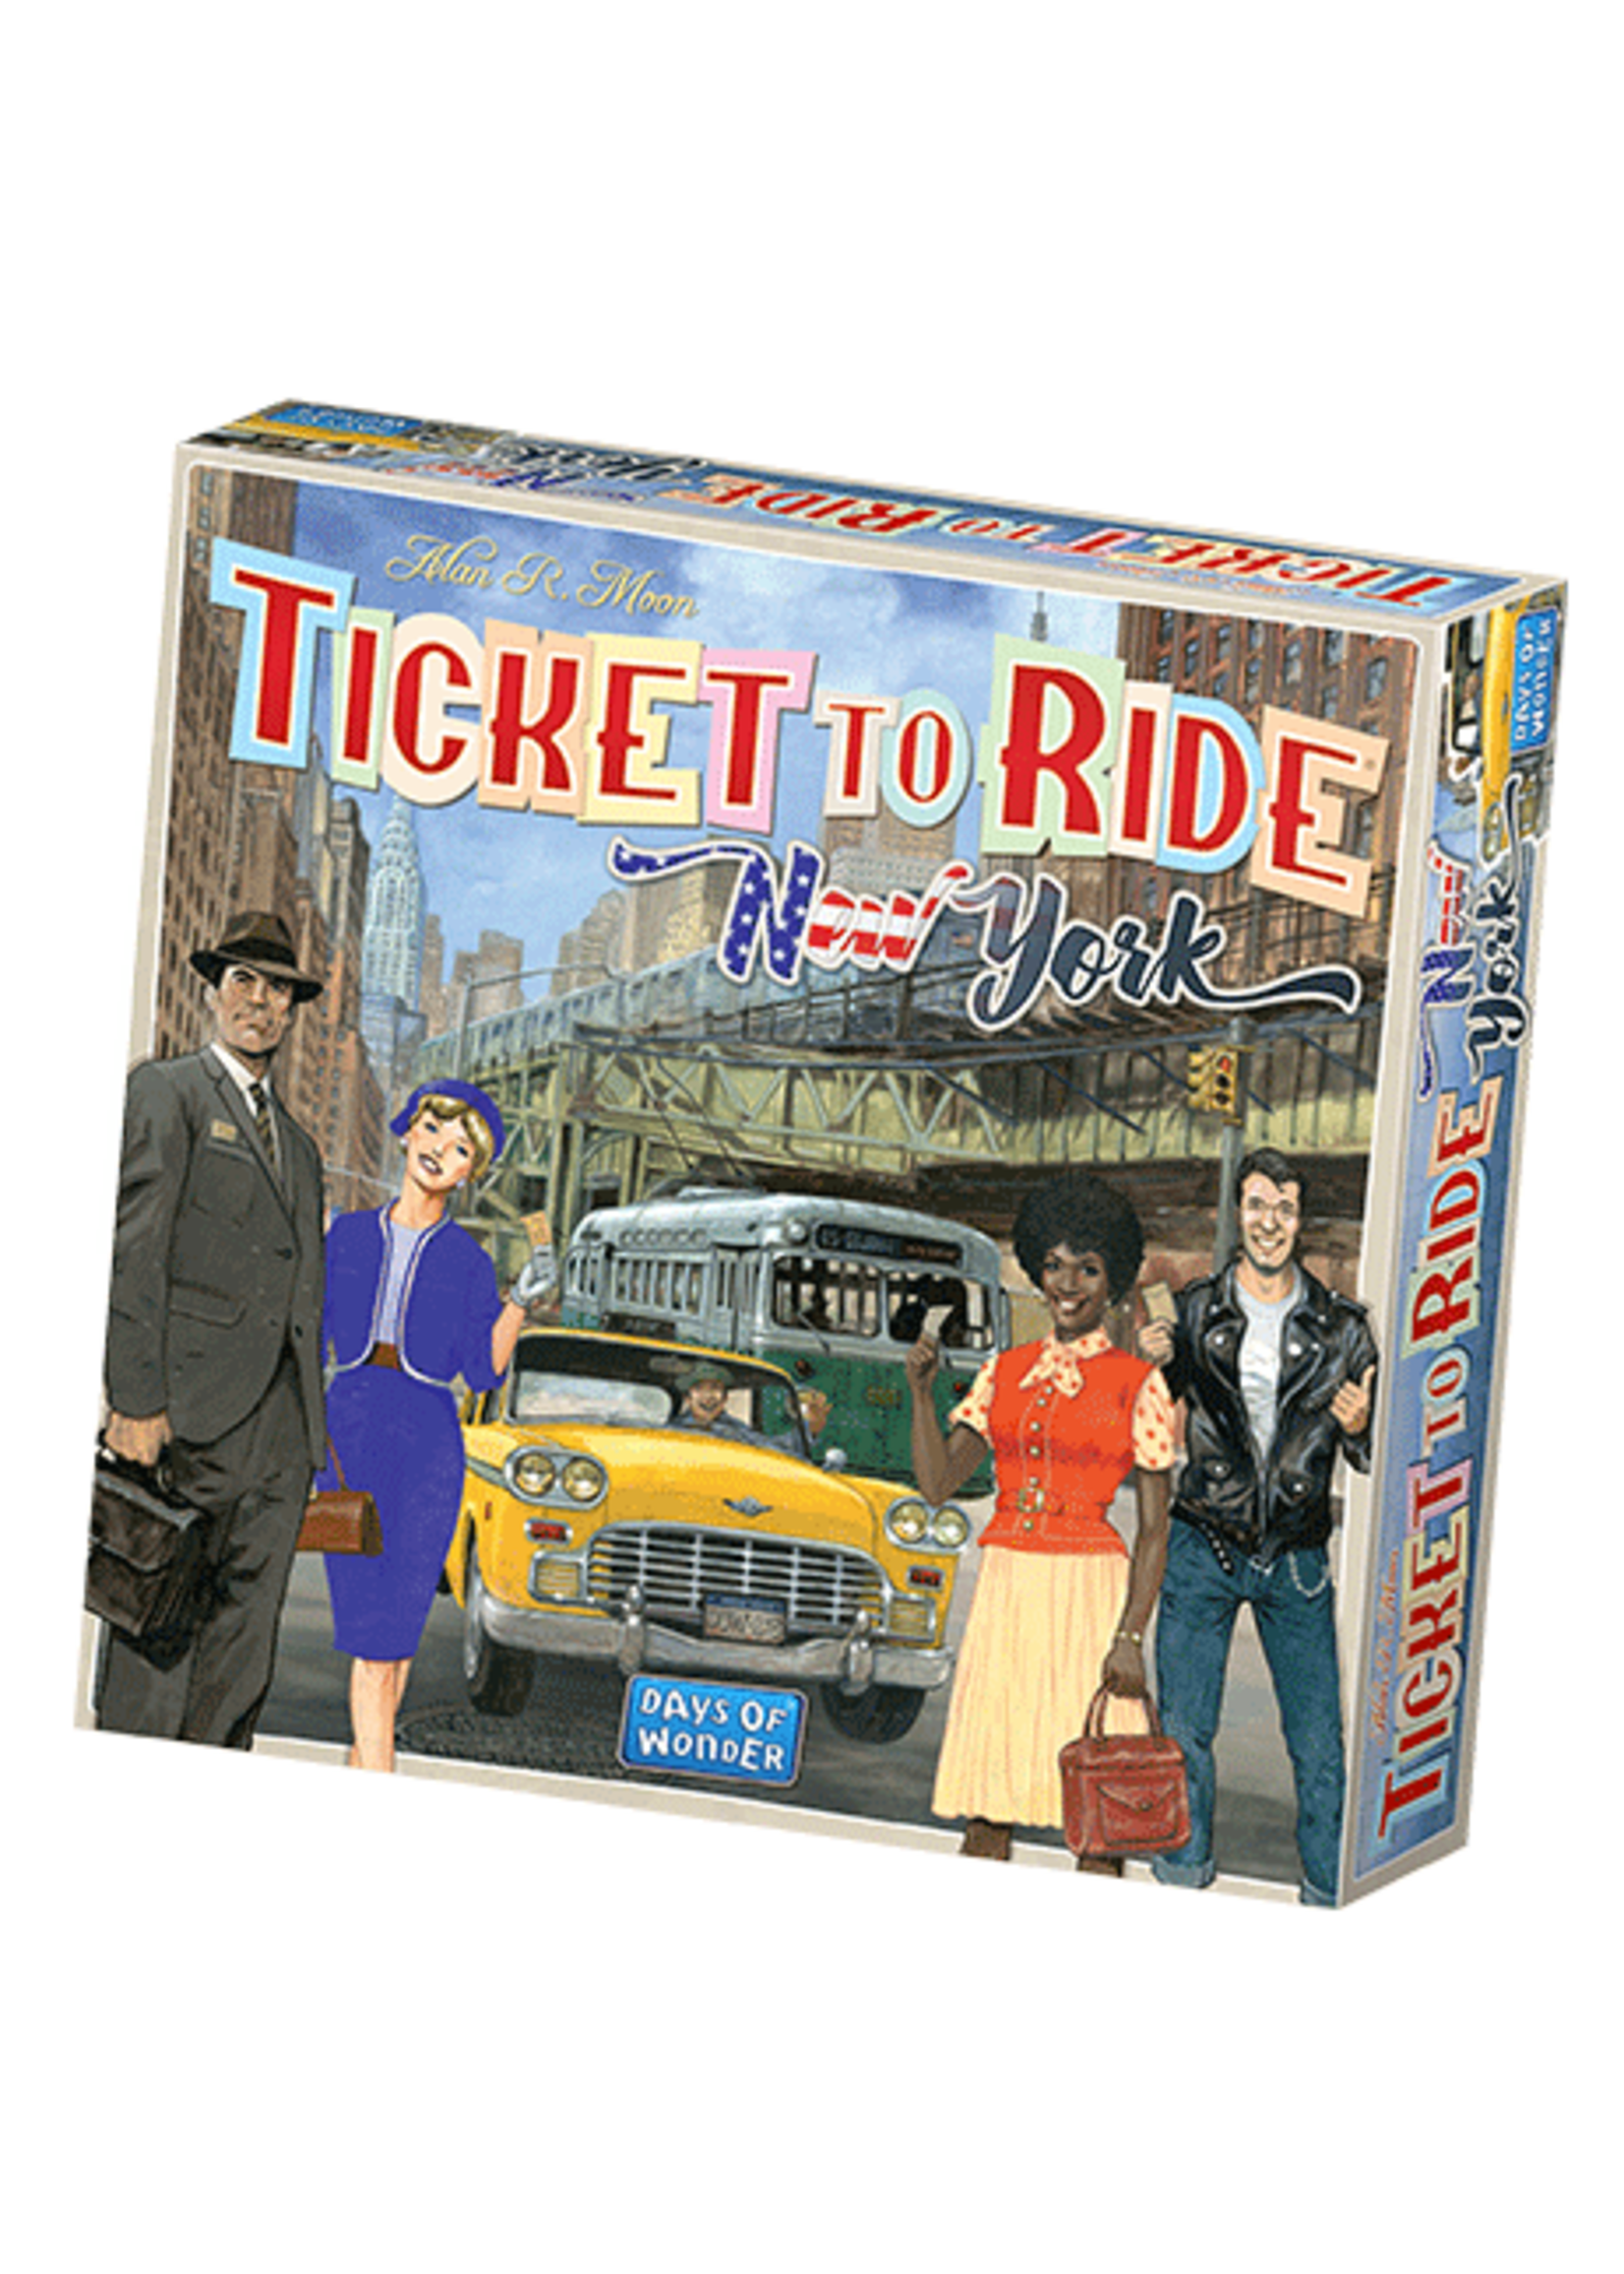 Days of Wonder Ticket to Ride: Express